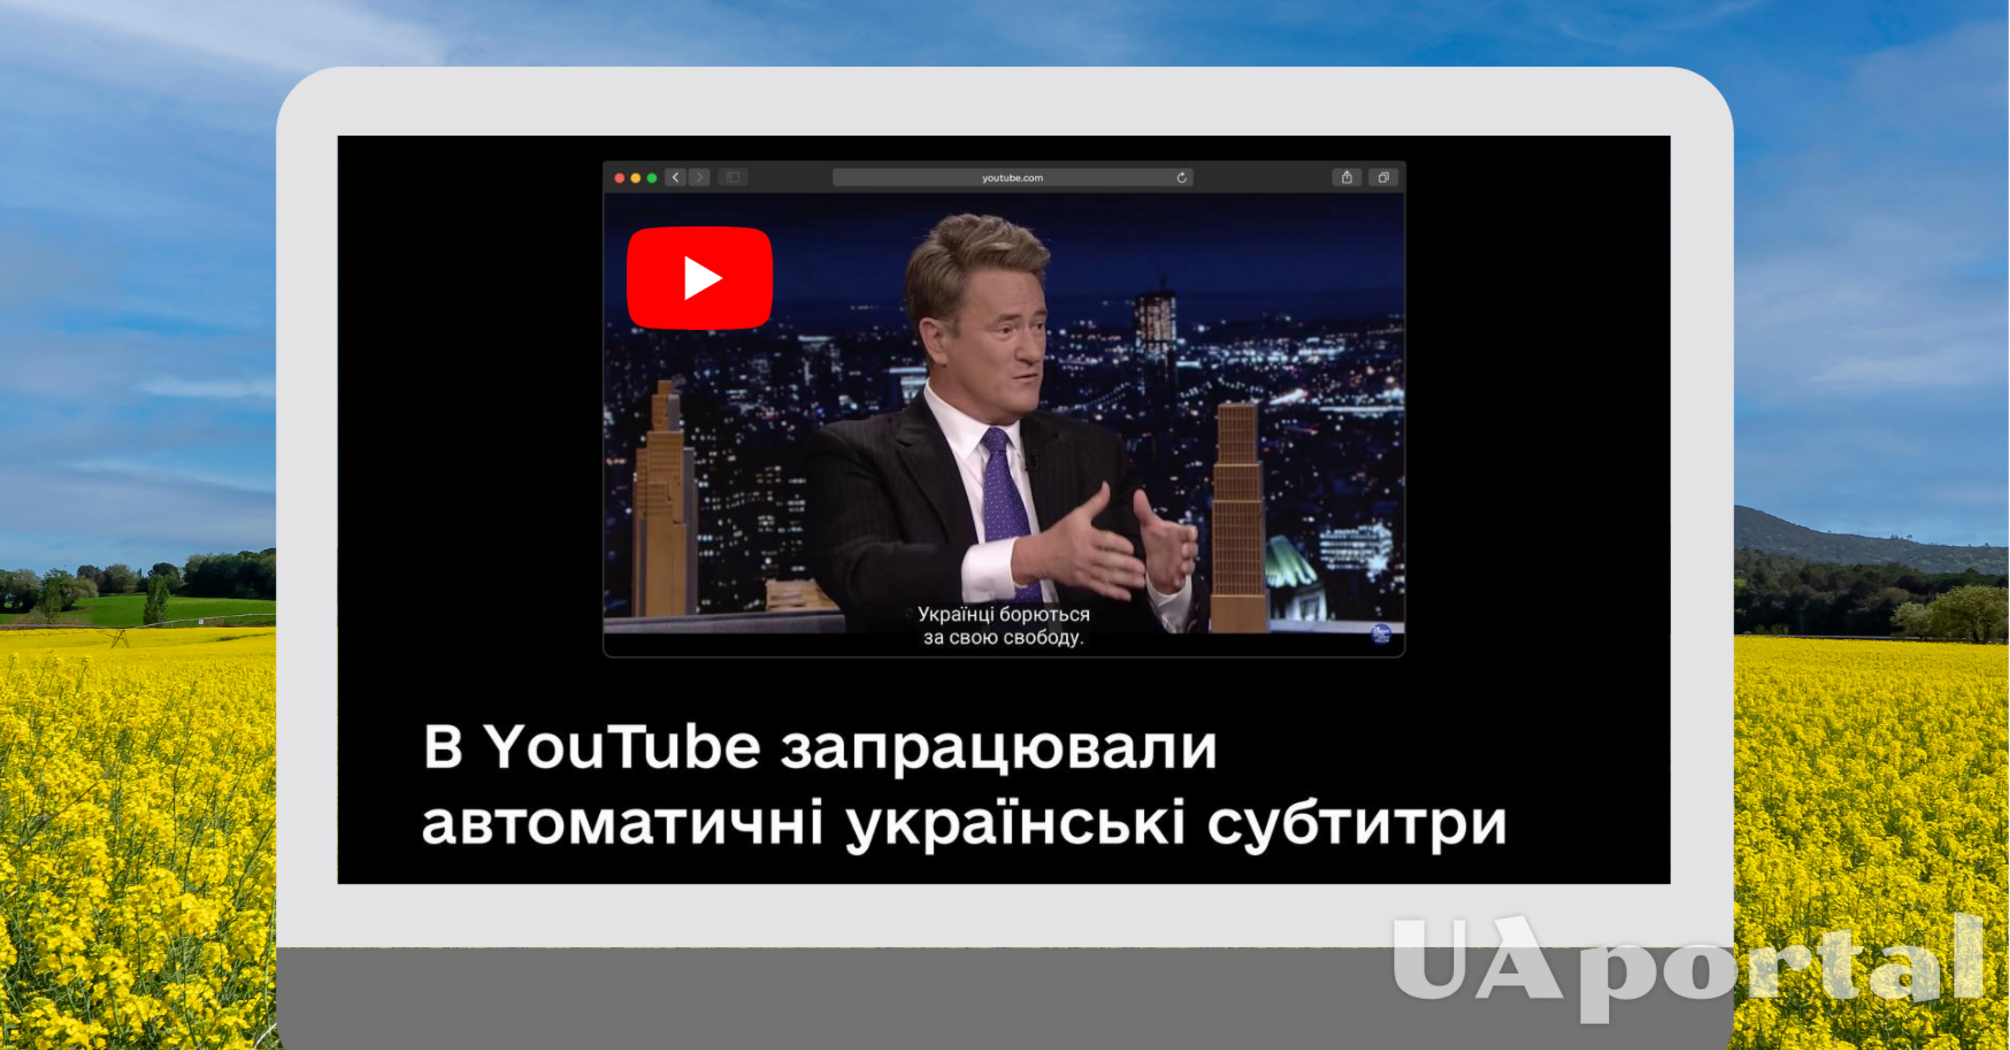 В YouTube появились автоматические украинские субтитры. Как включить функцию